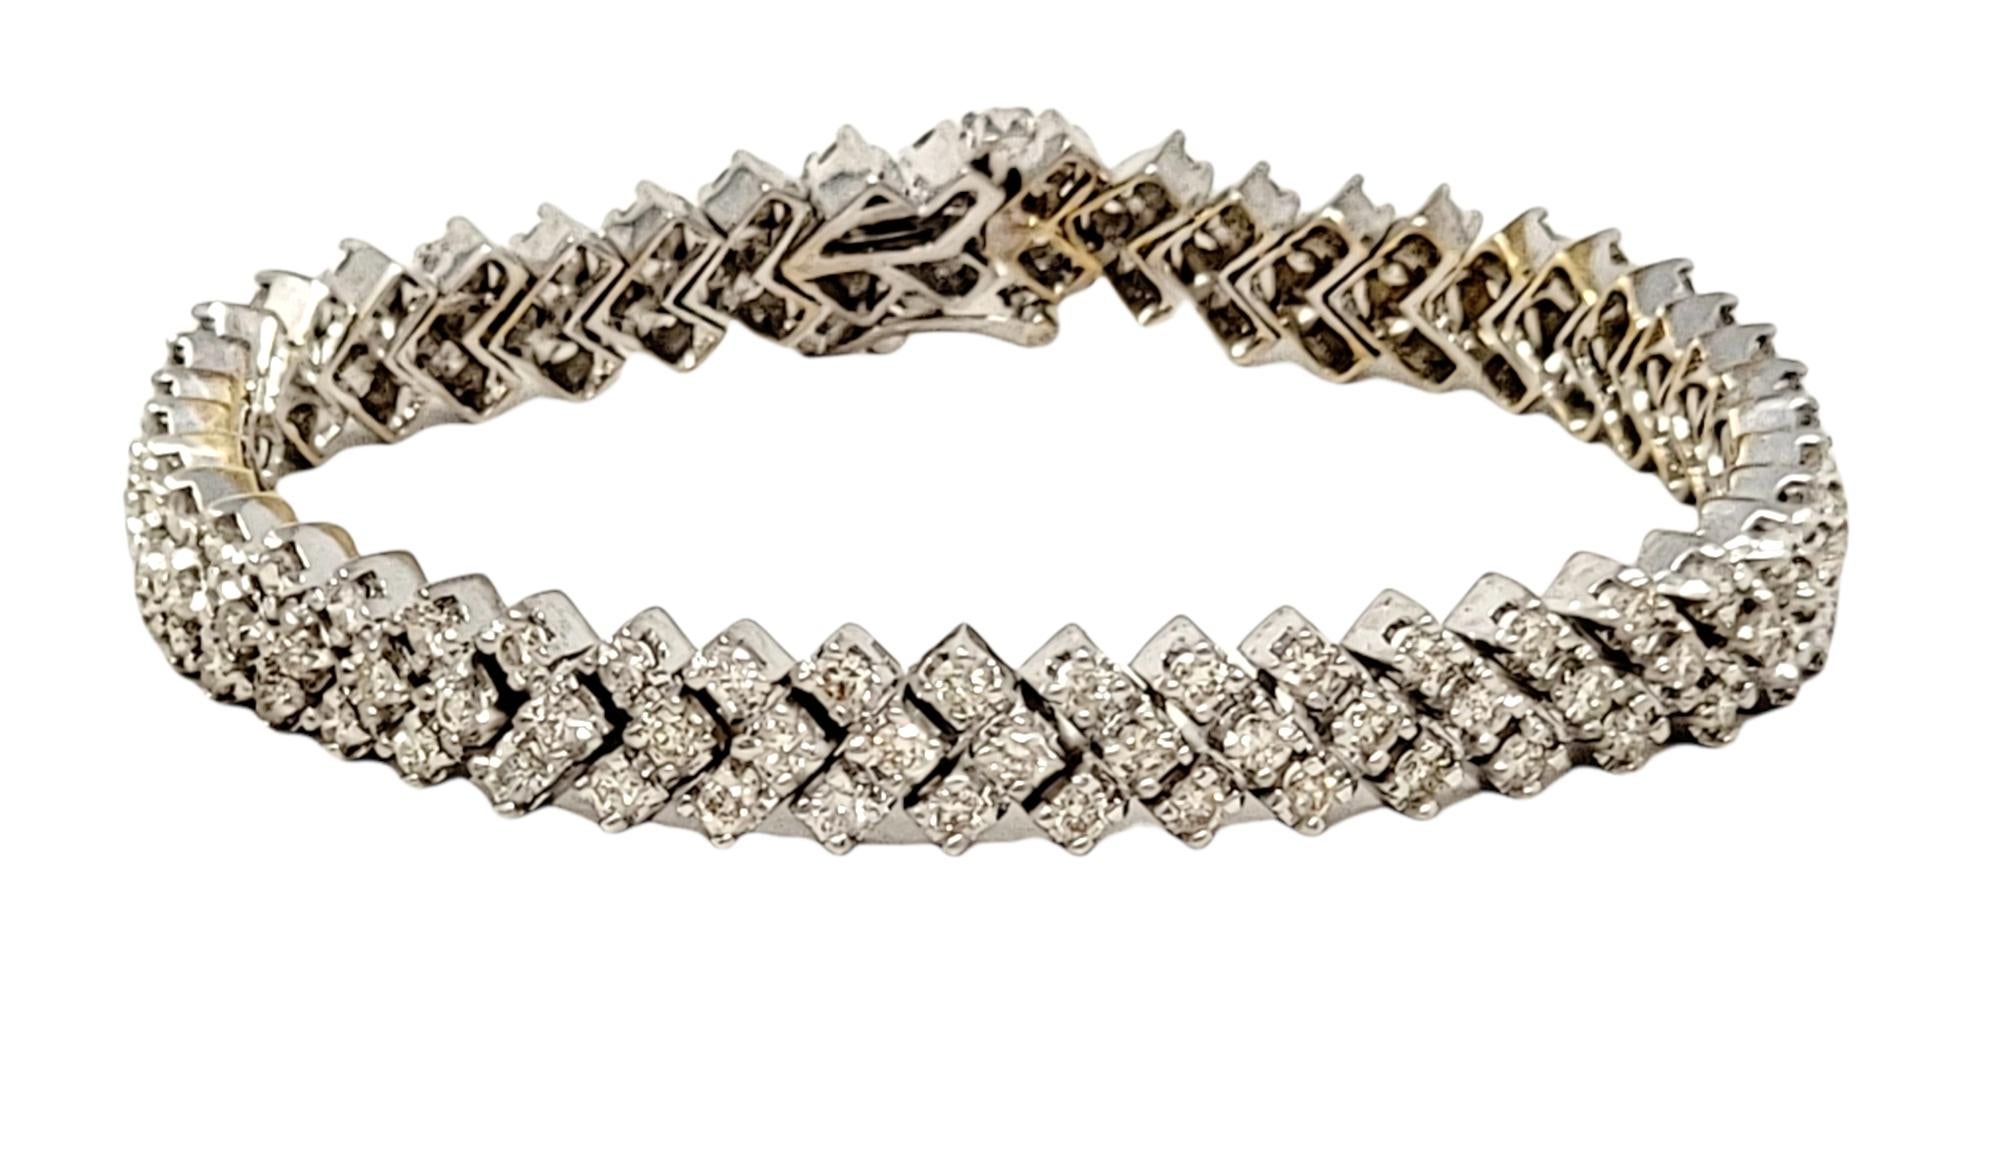 Ce bracelet moderne étincelant à maillons en diamant est tout simplement magnifique ! Le design substantiel de style chevron brille et resplendit au poignet, exhalant une élégance contemporaine. Whiting : 135 diamants ronds et brillants éblouissent